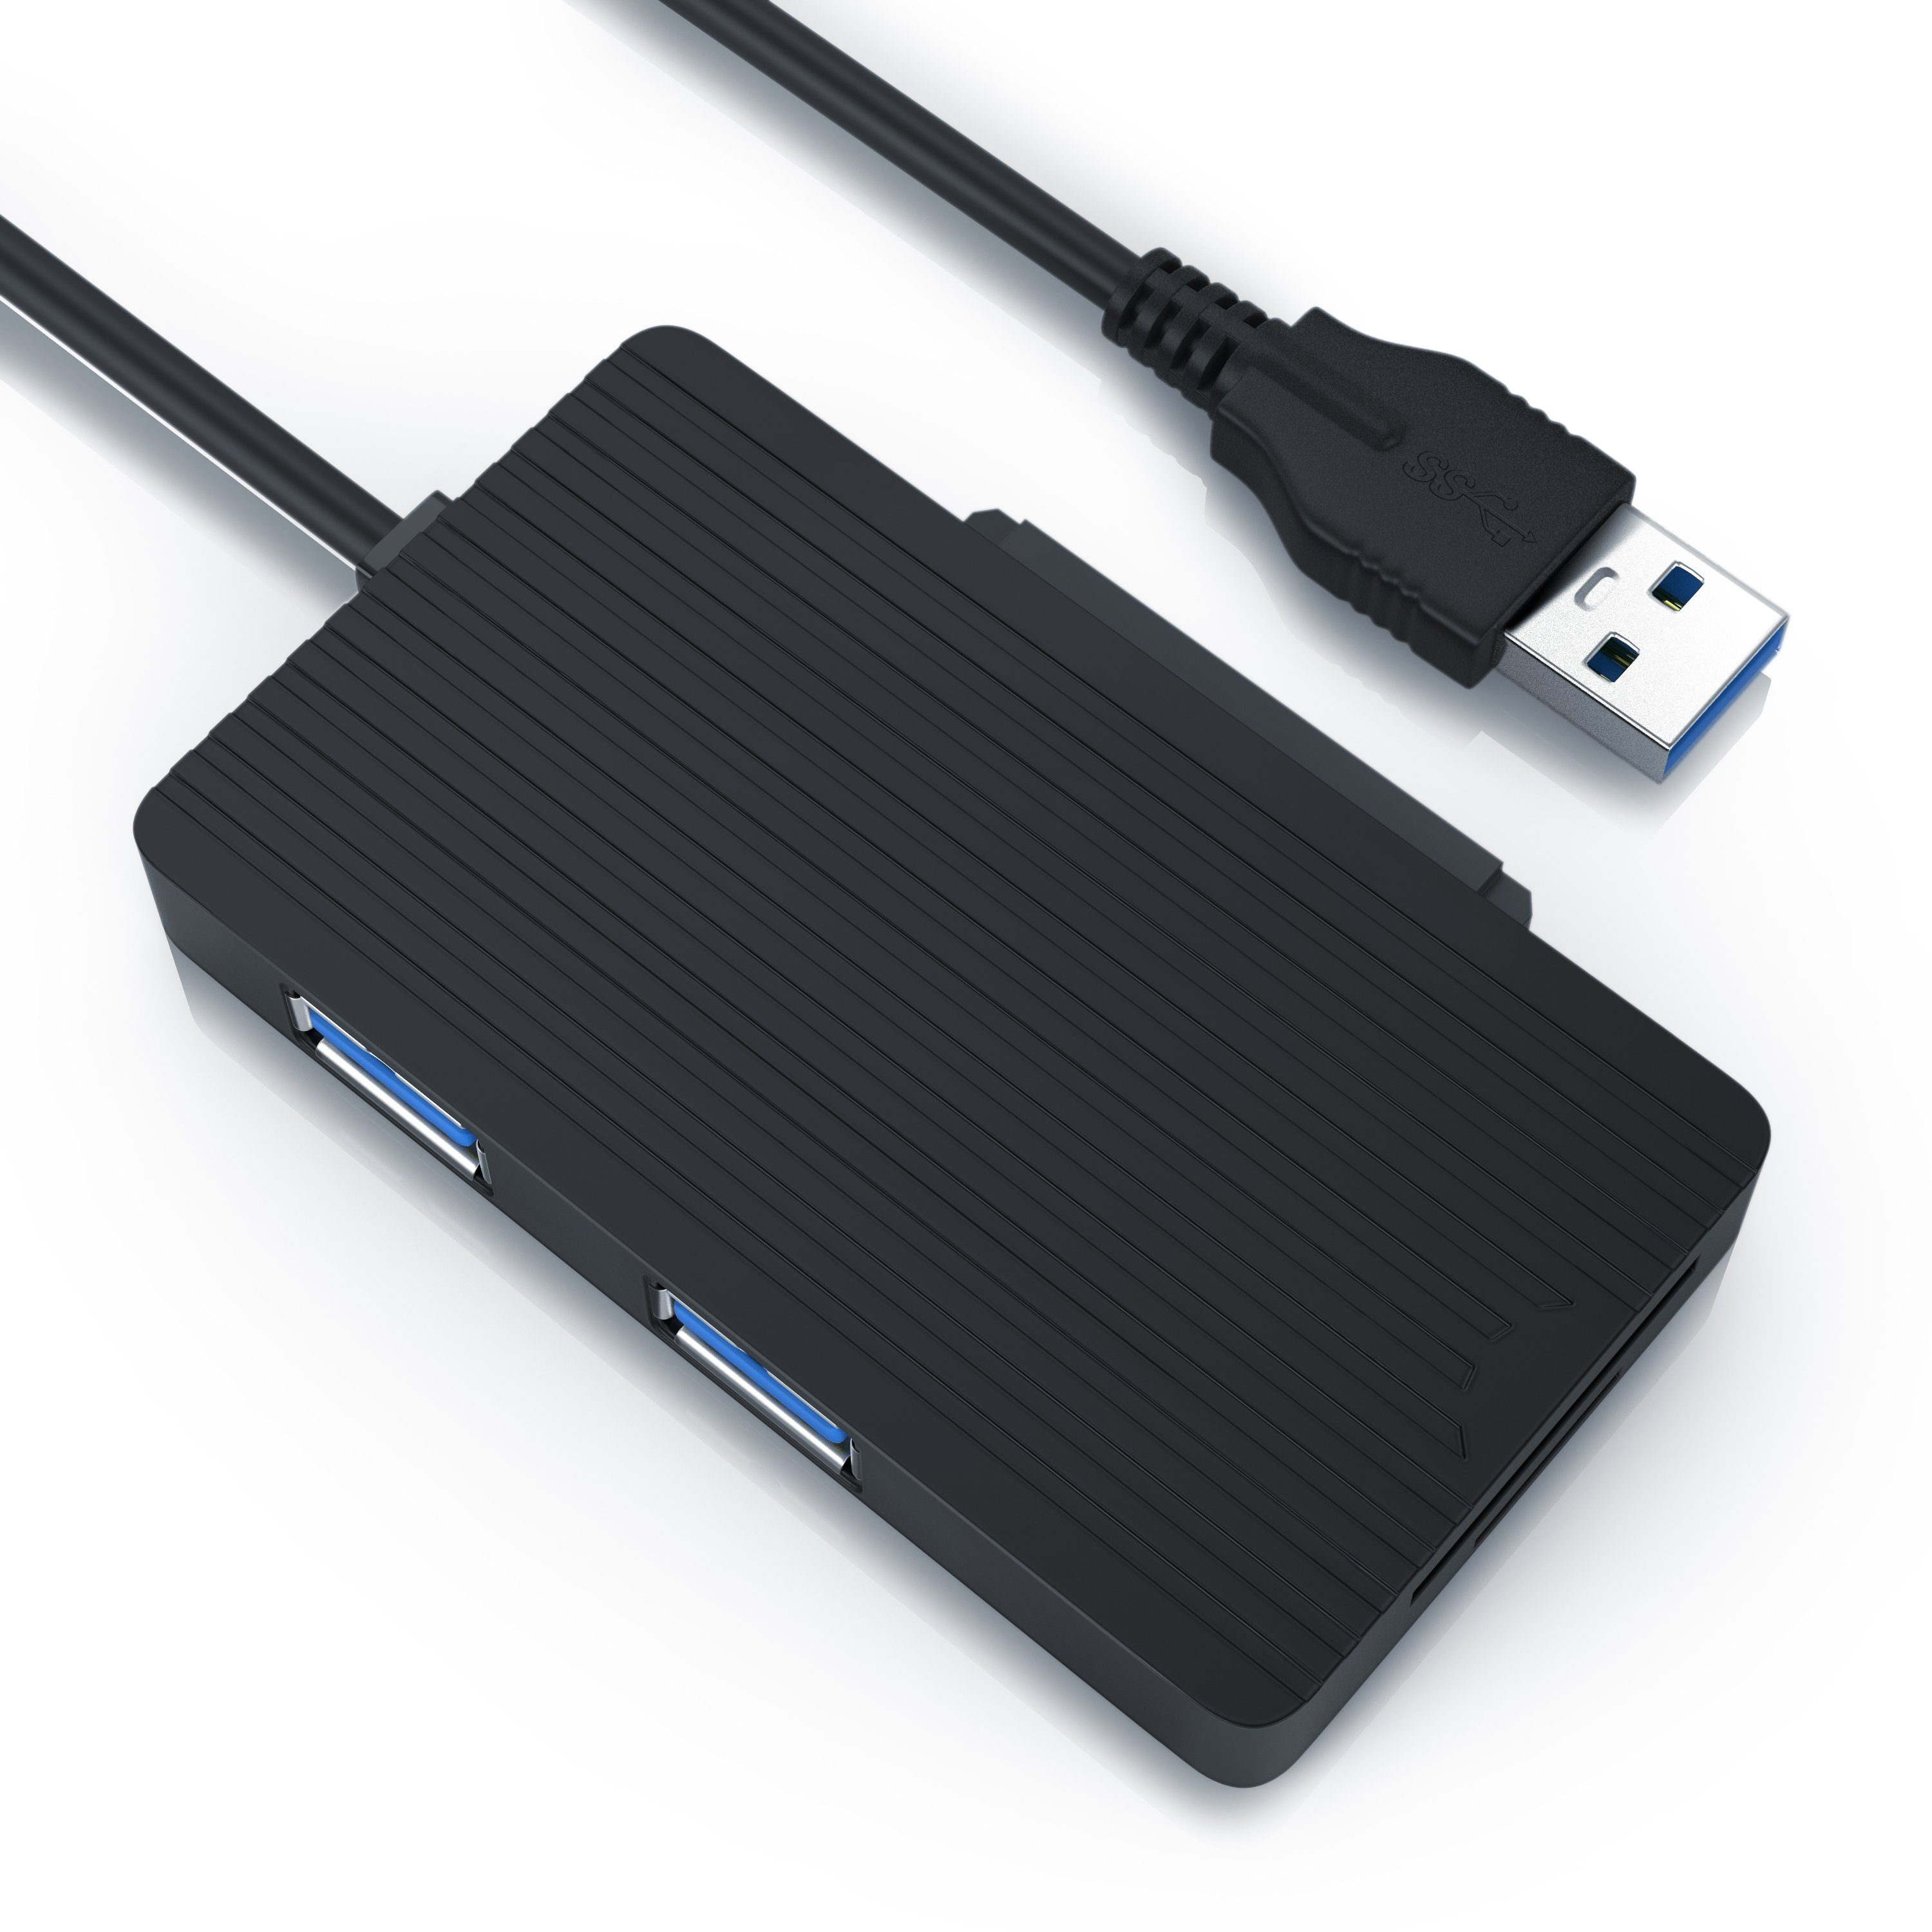 CSL Computer-Adapter, USB 3.0 Multifunktionsadapter USB Hub + SATA Adapter  + TF/microSD/SD Cardreader online kaufen | OTTO